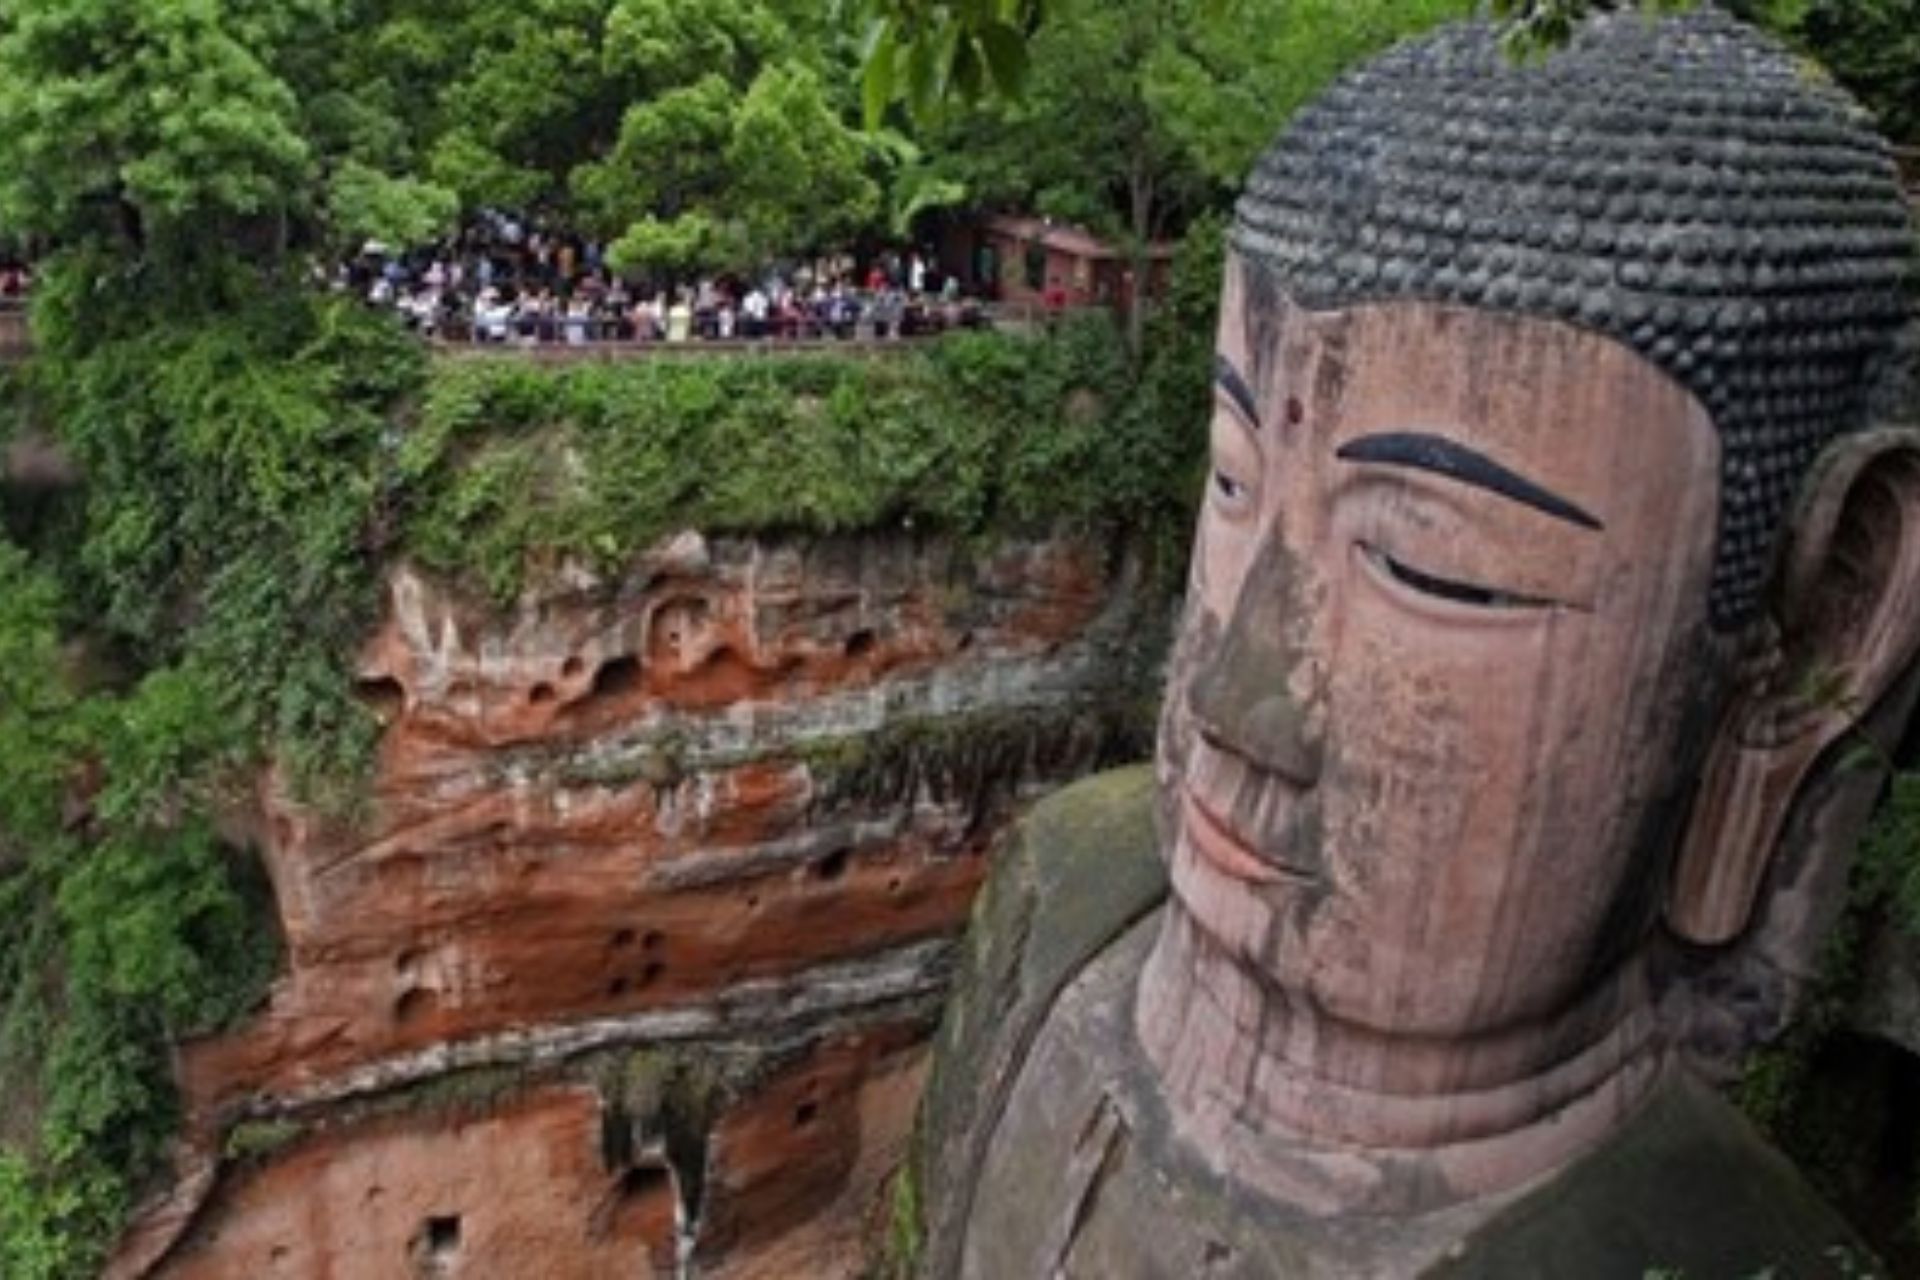 Cabeza de Buda y un fondo de árboles y gente